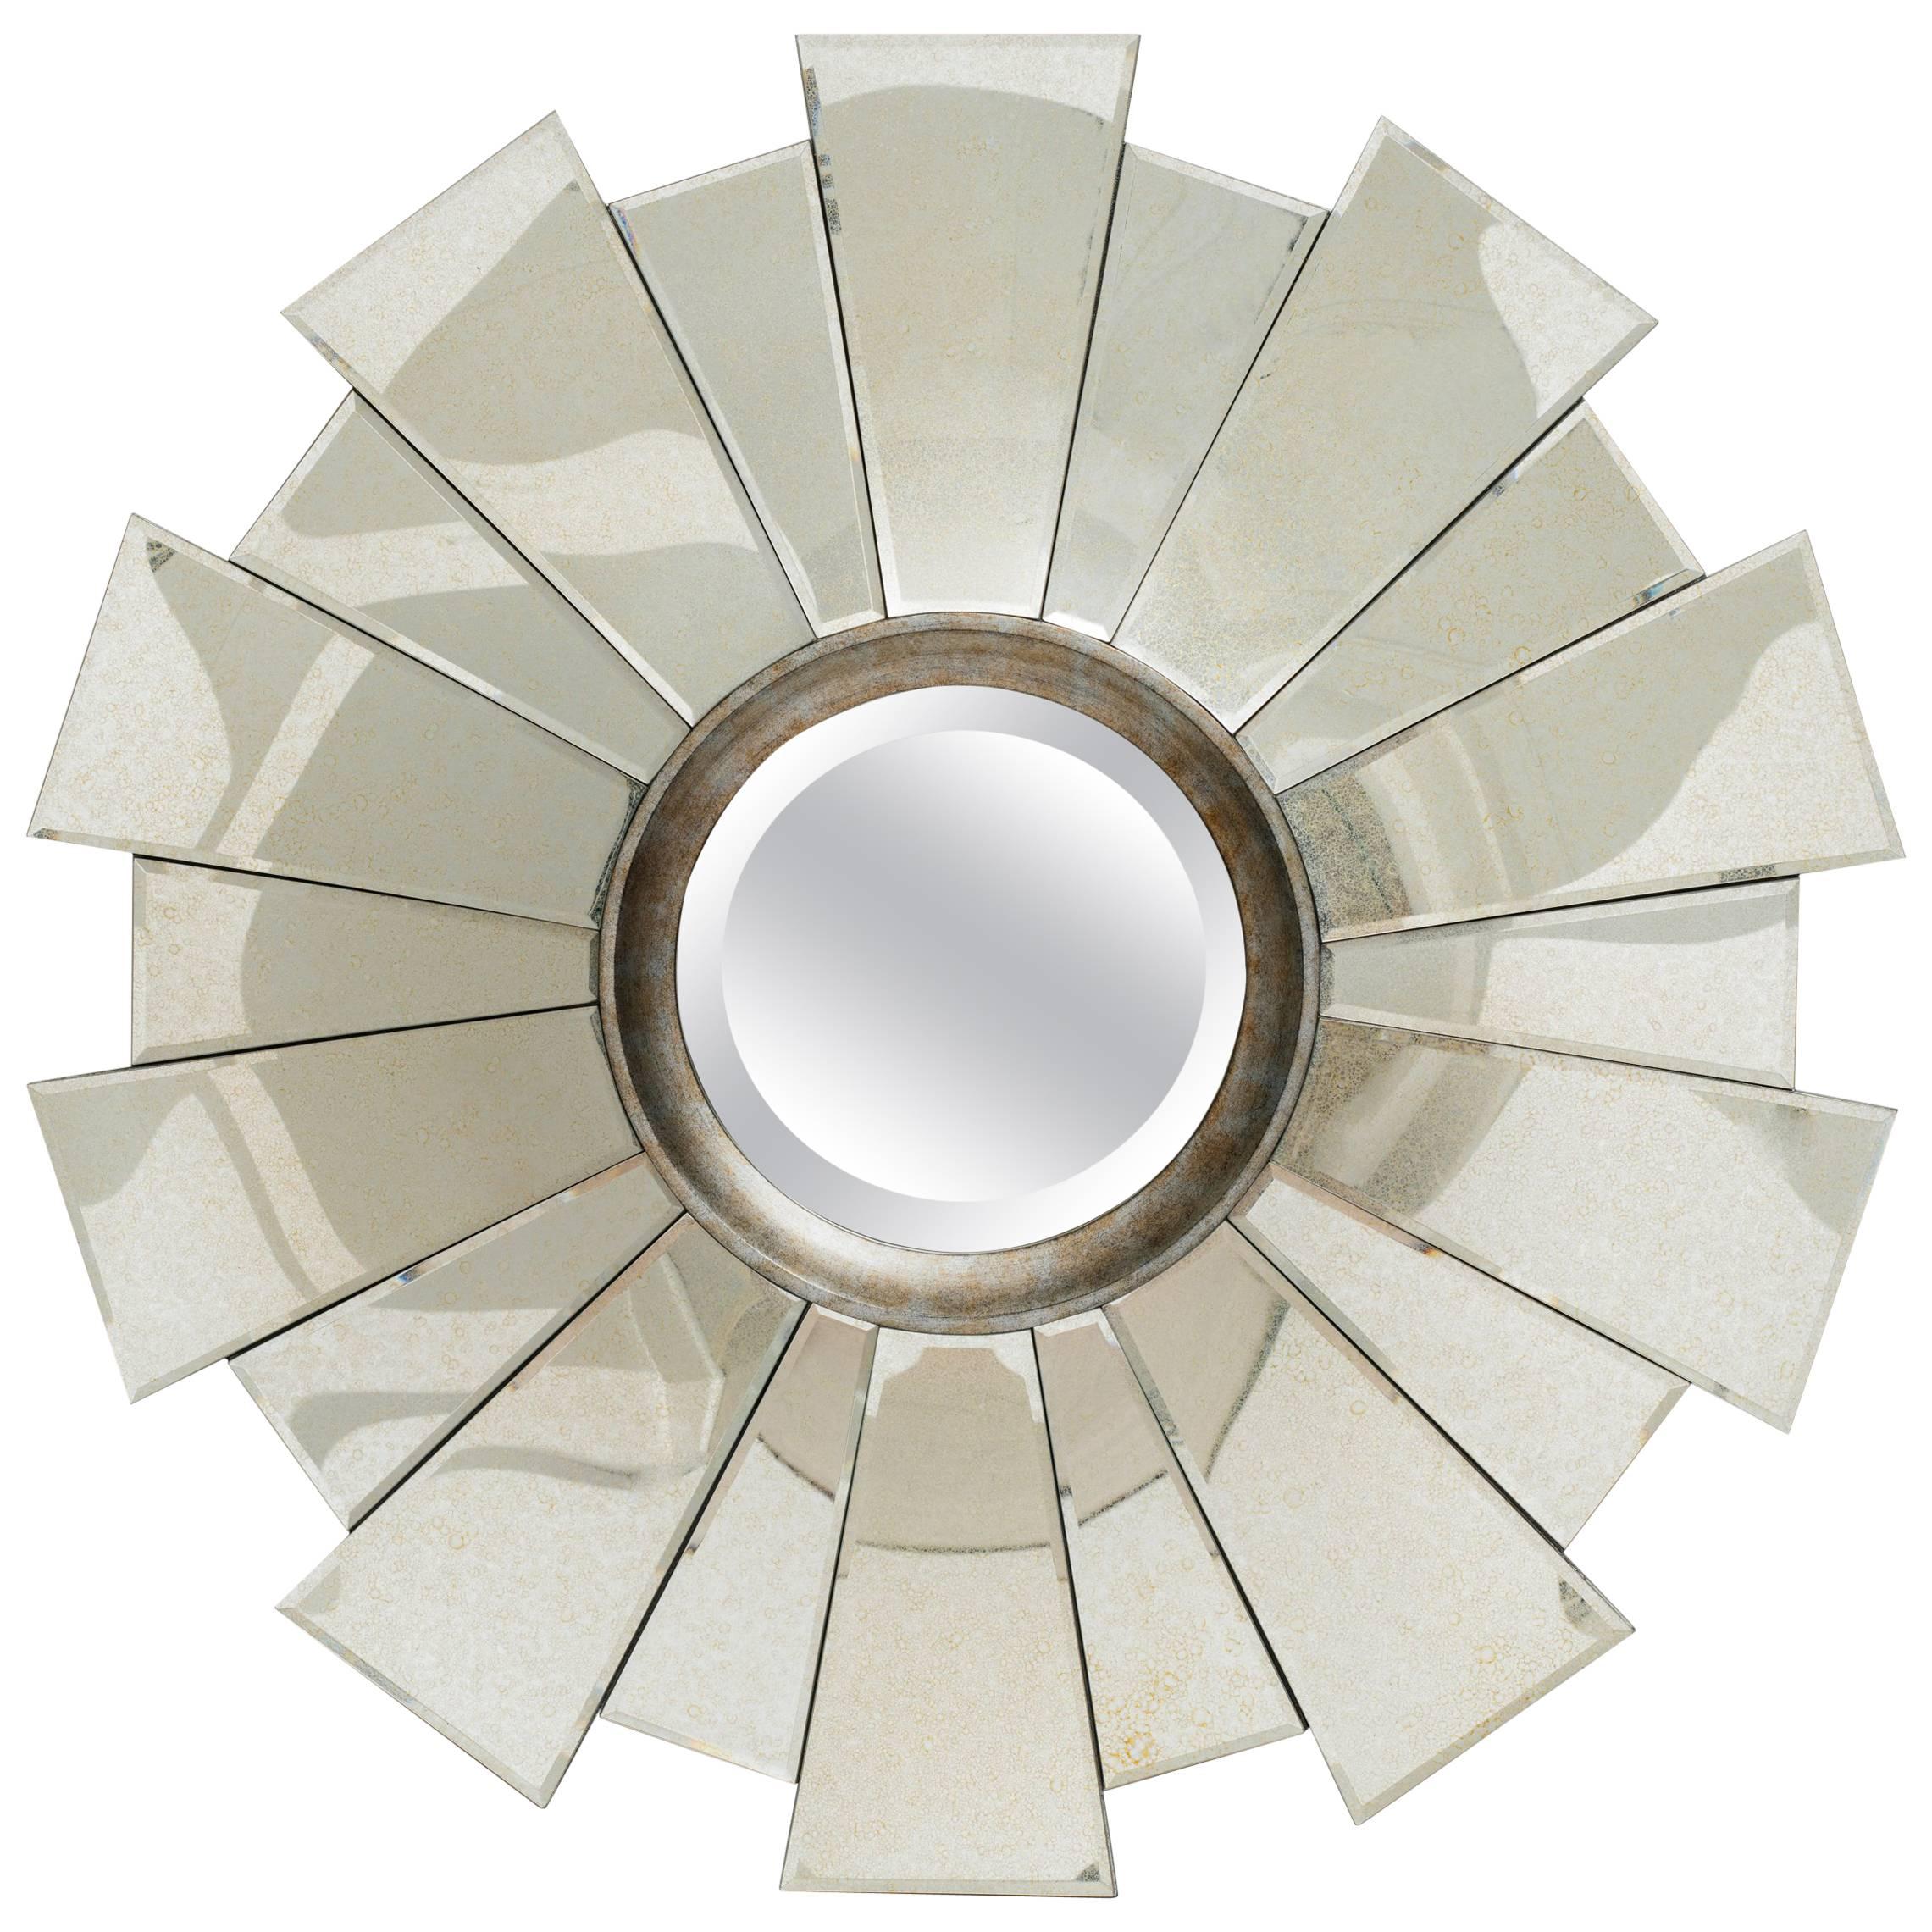 Art Deco Style Sunburst Mirror